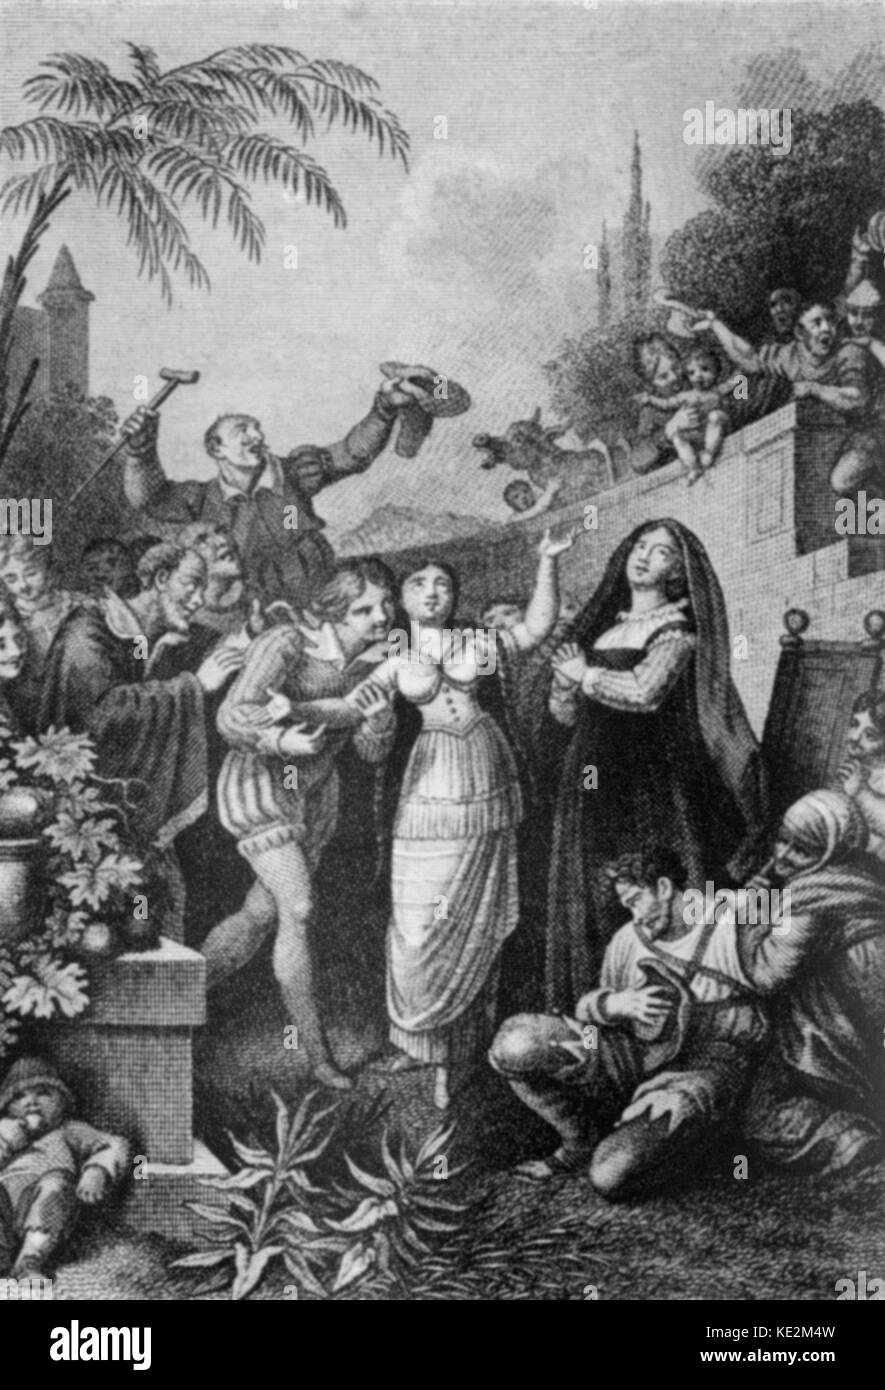 Carl Maria von Weber 's opera 'Preziosa'. Scena di agire II. 1828 Illustrazione. Compositore tedesco e conduttore, 18 novembre 1786 - 5 giugno 1826. Foto Stock